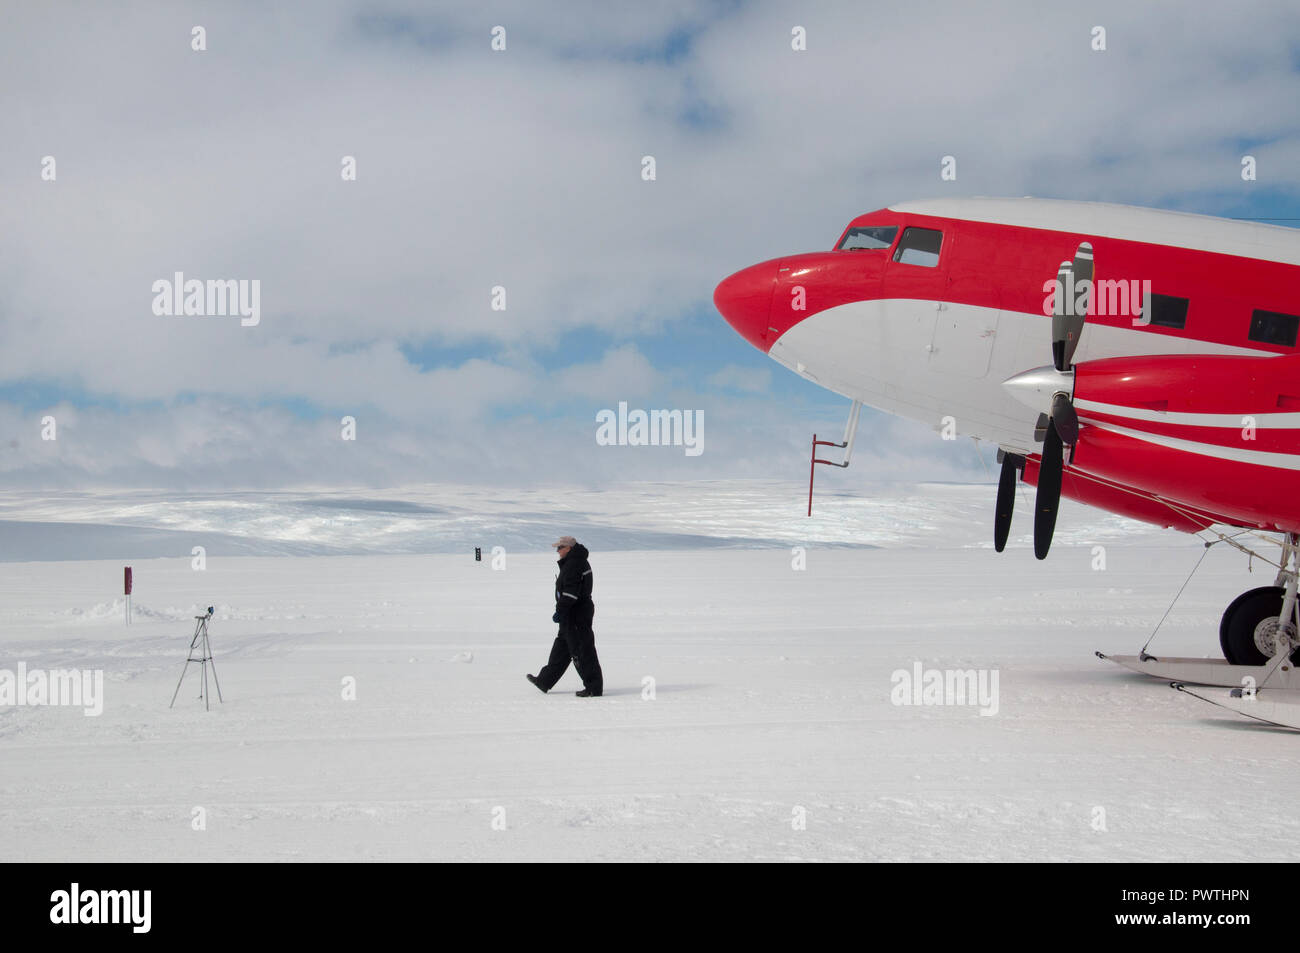 Fortschritte Station, Antarktis, 16. Januar 2017: großes Flugzeug tunes Schnee auf der Landebahn Flughafen. Antarktis Stockfoto